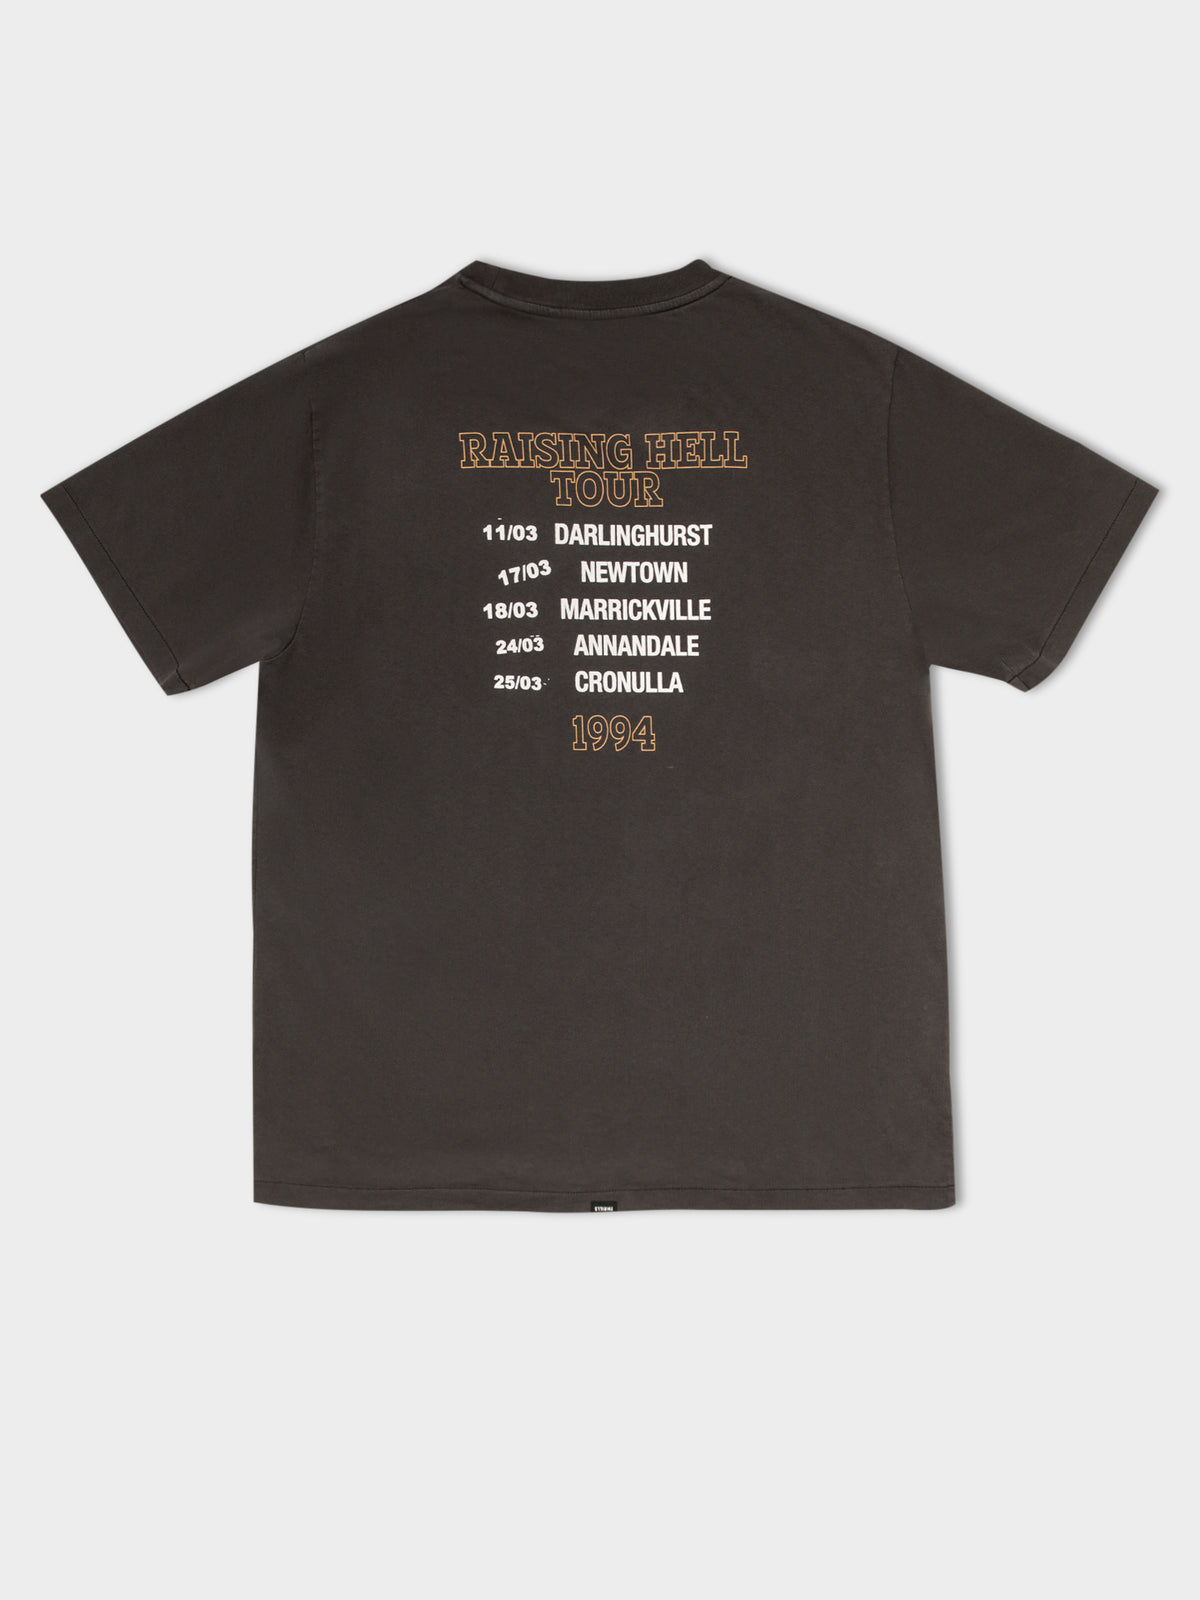 Raising Hell Tour Merch T-Shirt in Merch Black